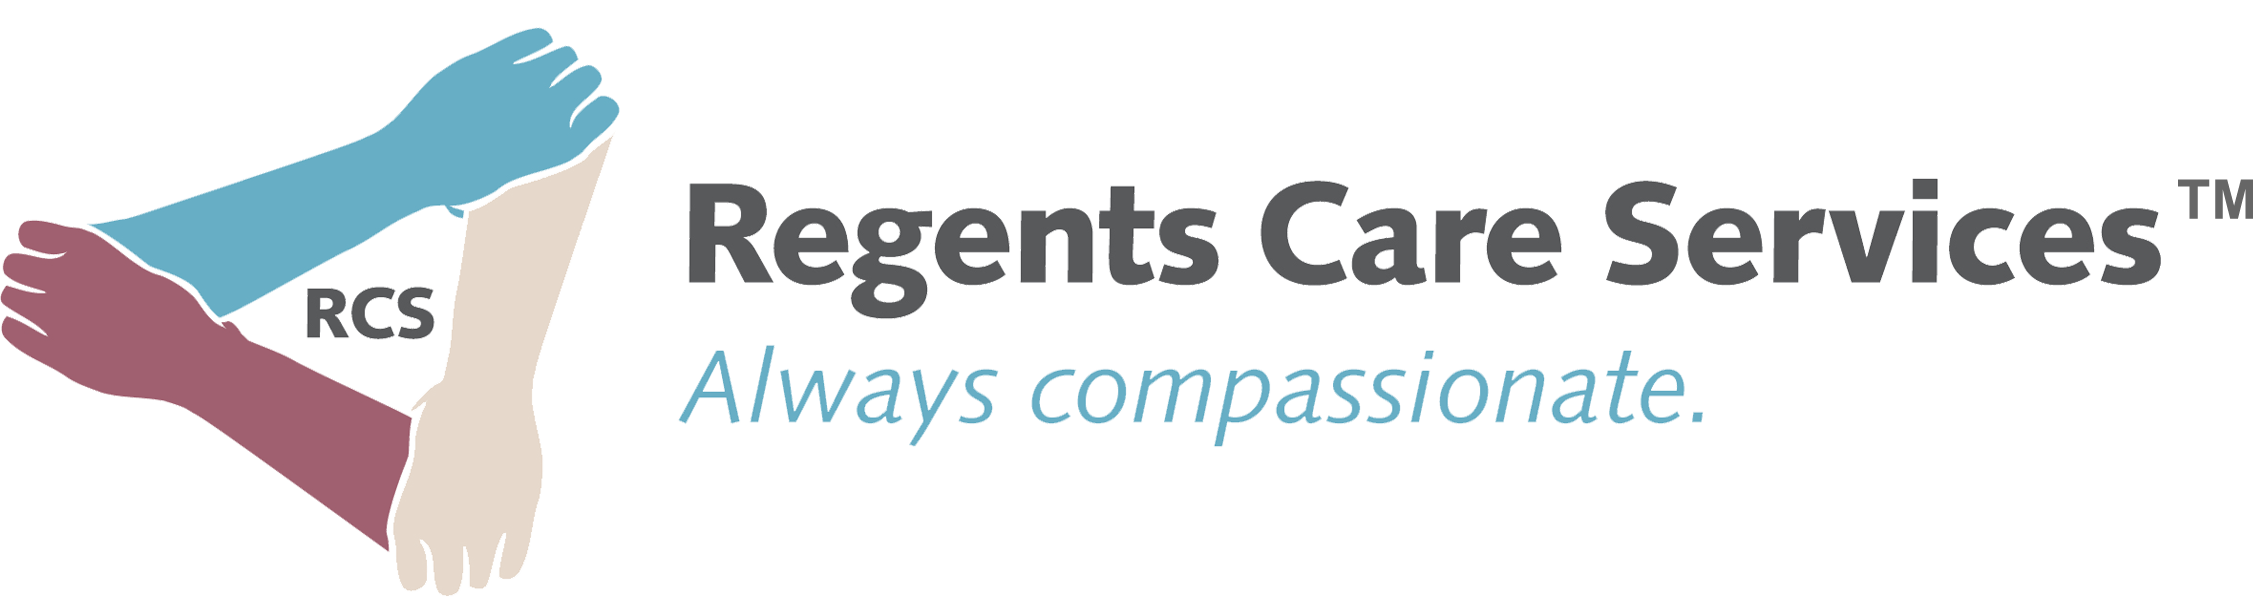 Rwardz Spotlight: Regents Care Services